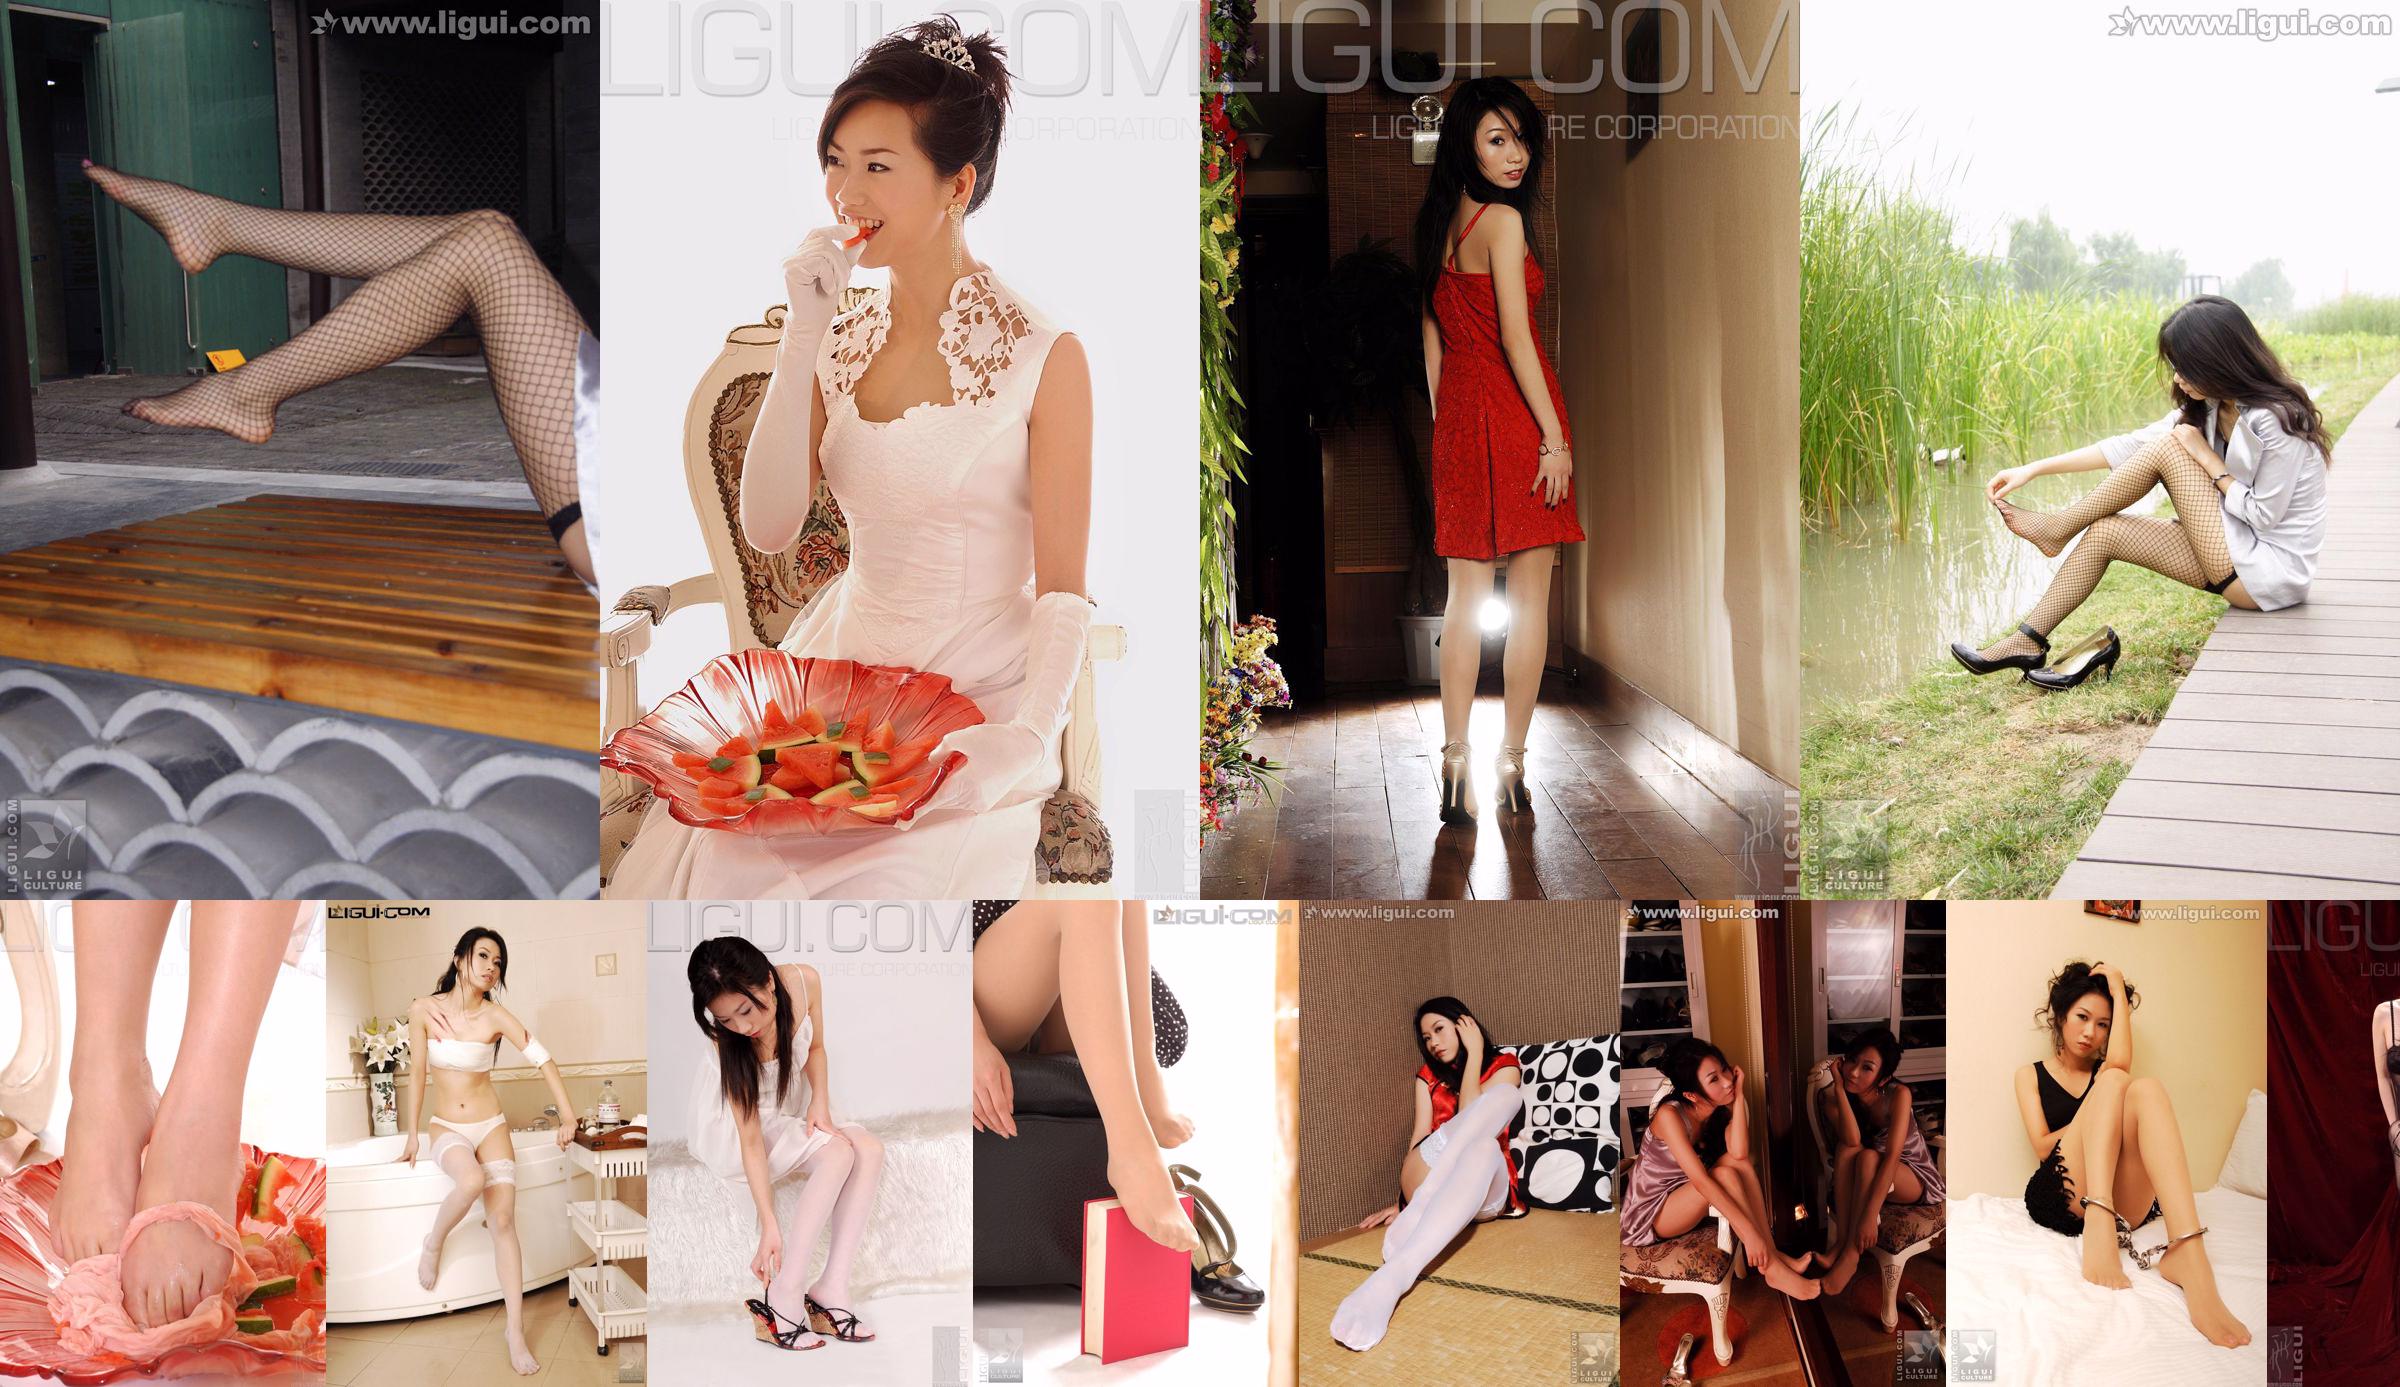 [丽 柜 LiGui] Imagem do pé de seda da modelo Helen "Vestido vermelho feminino" No.3d4e0b Página 1